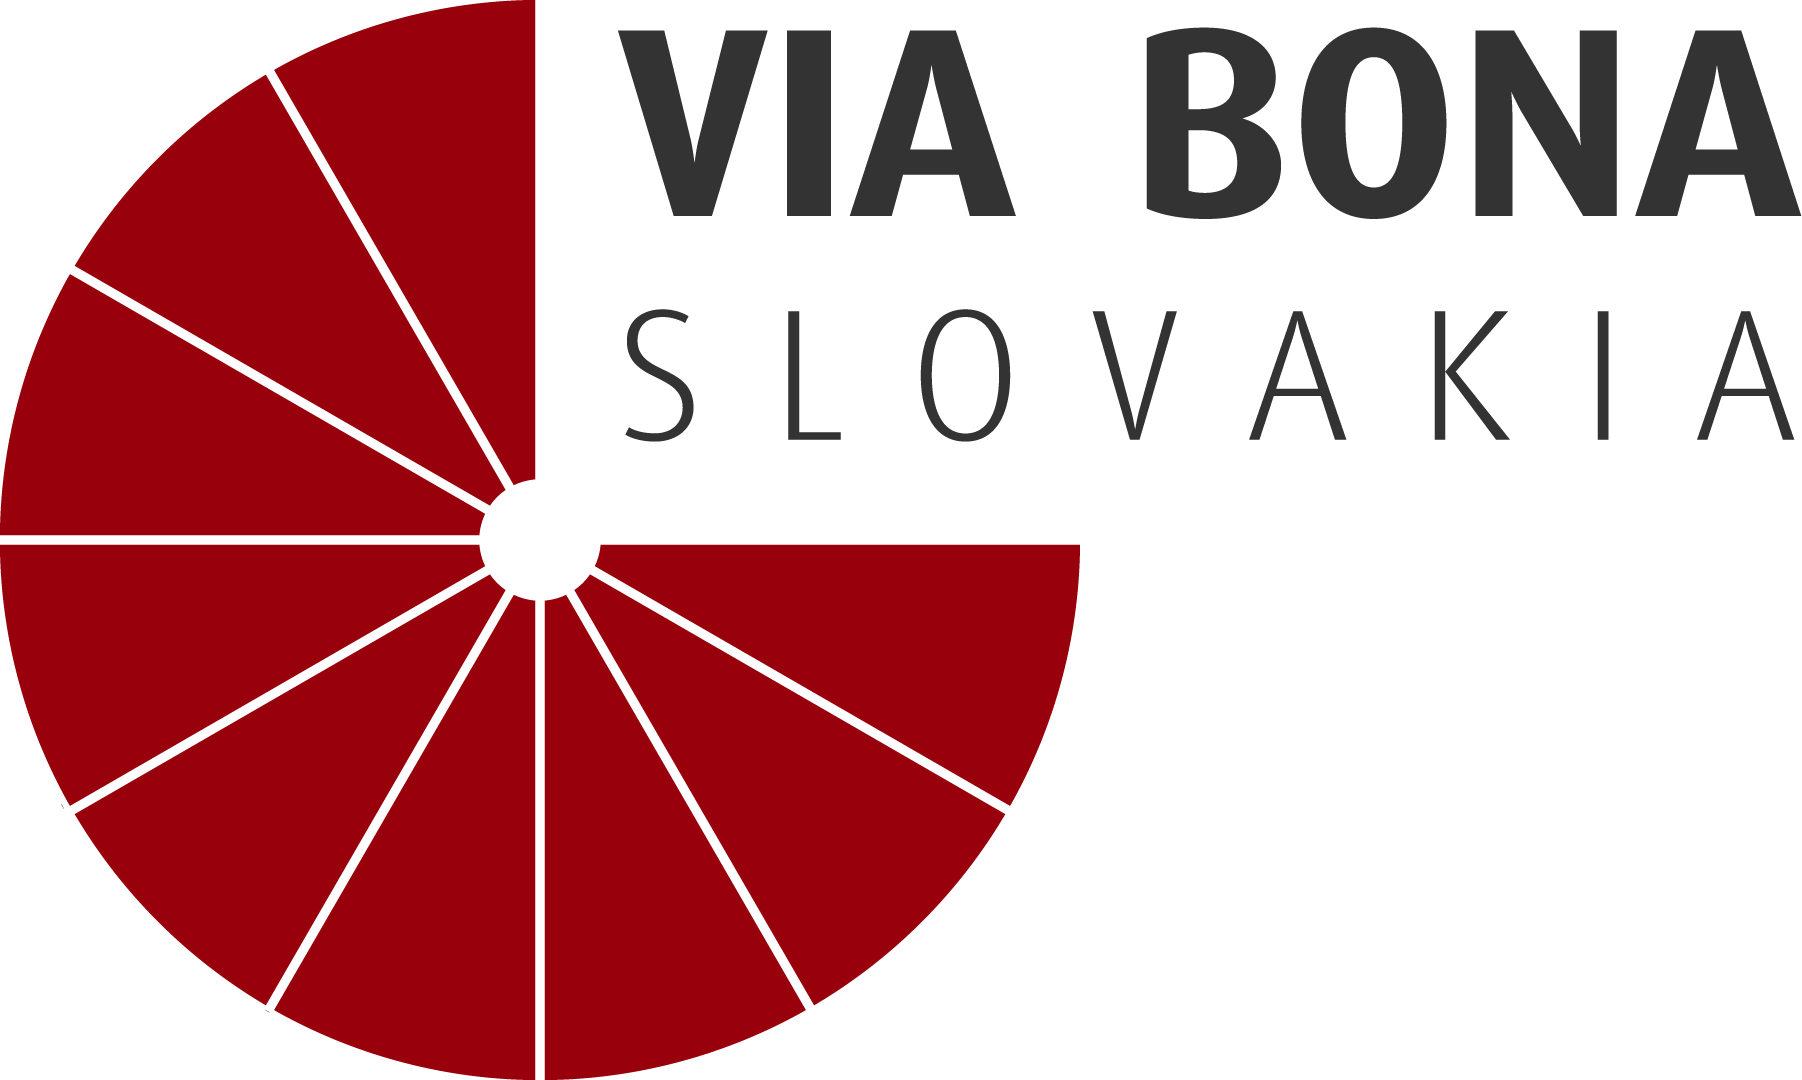 Zodpovedná veľká firma – Via Bona Slovakia logo